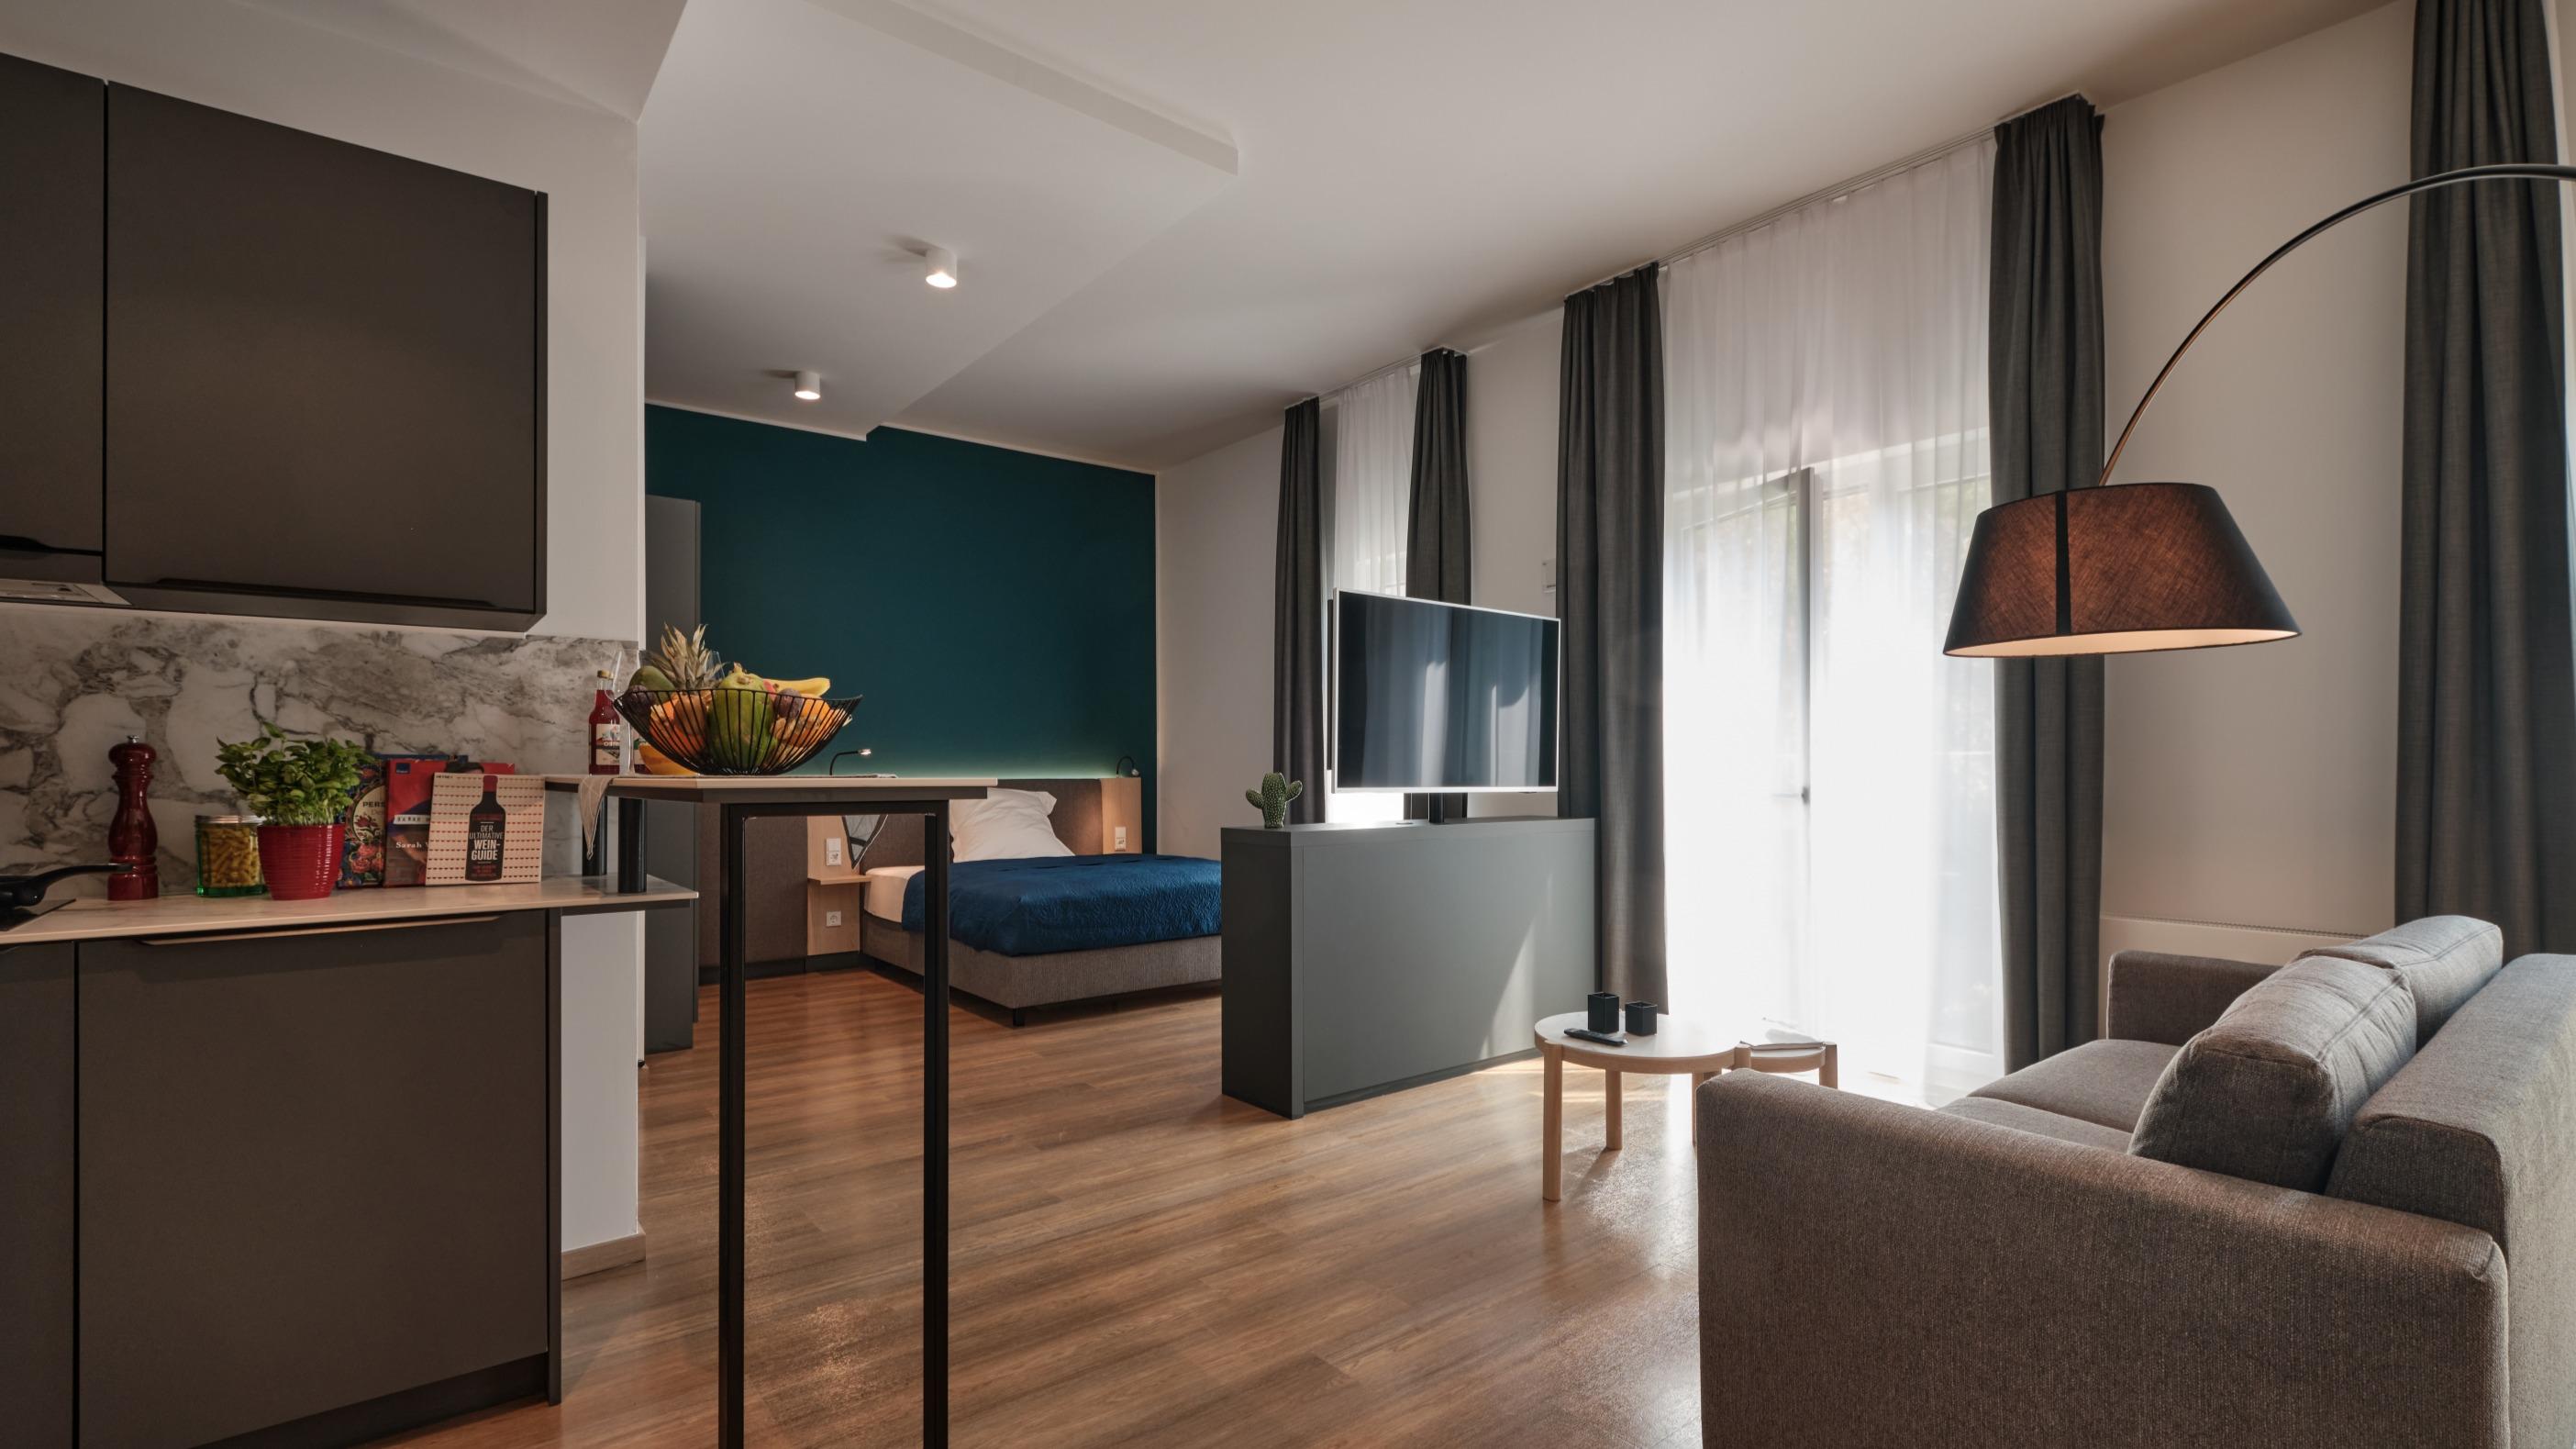 Küche, Living room, Schlafbereich - Urban Large
Stayurban — Berlin